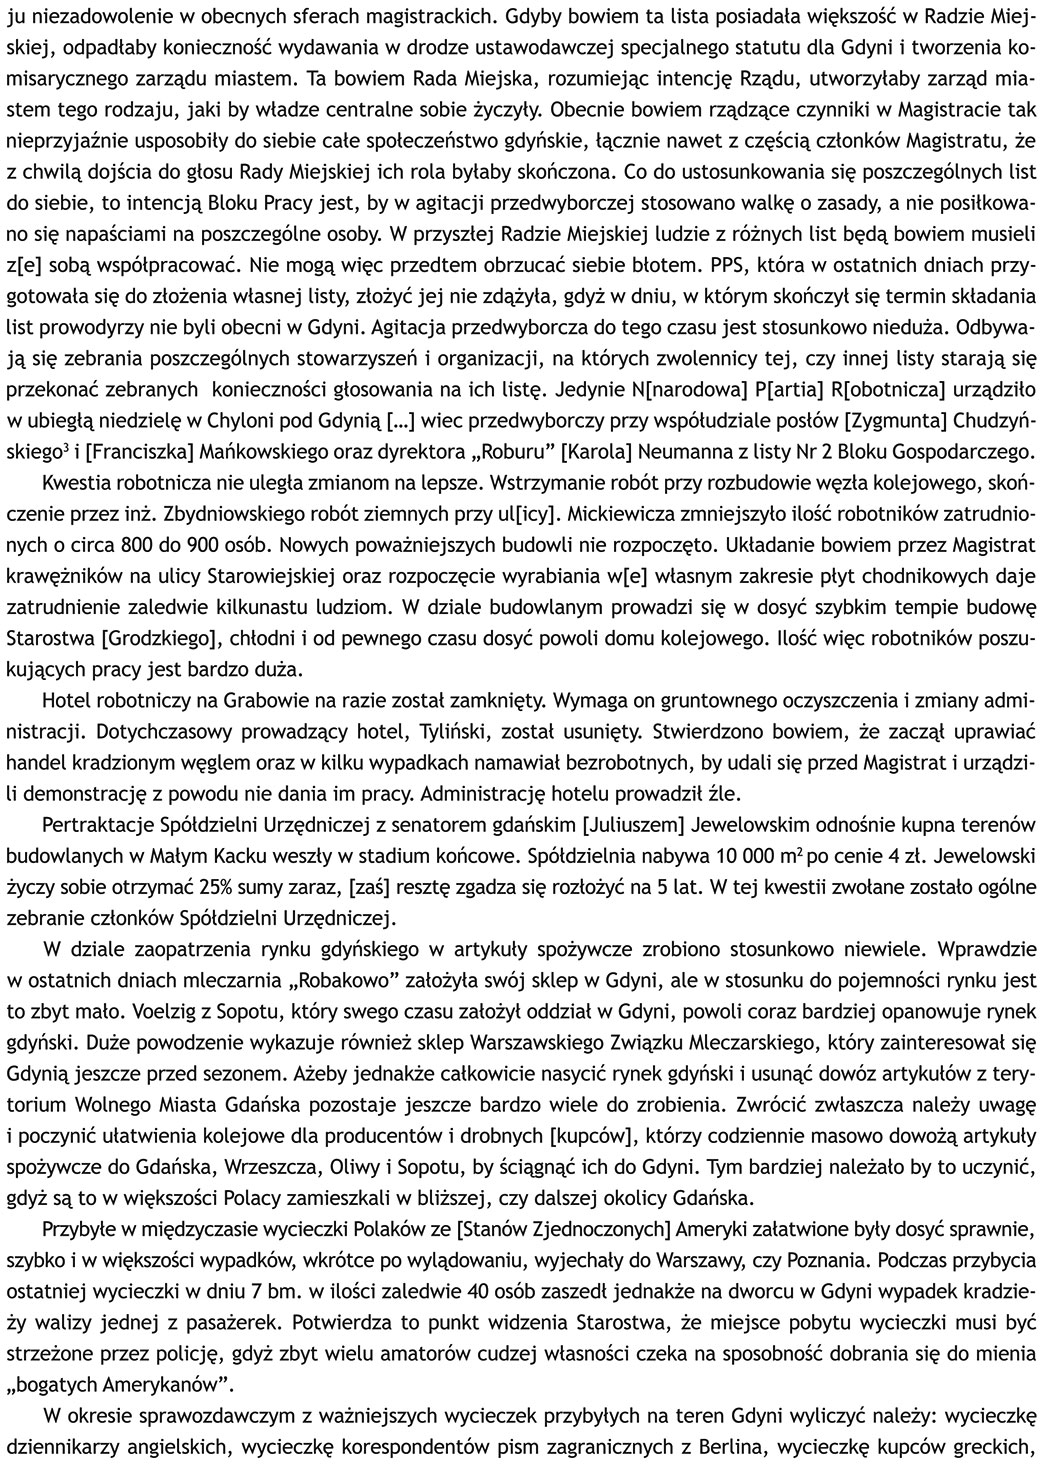 1929 lipiec 11 Gdynia - Sprawozdanie sytuacyjne Nr 144/Pf. p.o Starosty Grodzkiego w Gdyni Władysława Staniszewskiego za czas od 27 czerwca do 10 lipca 1929 roku, oryg. mps., APG O/G, sygn. 682/2288, s. 16-27